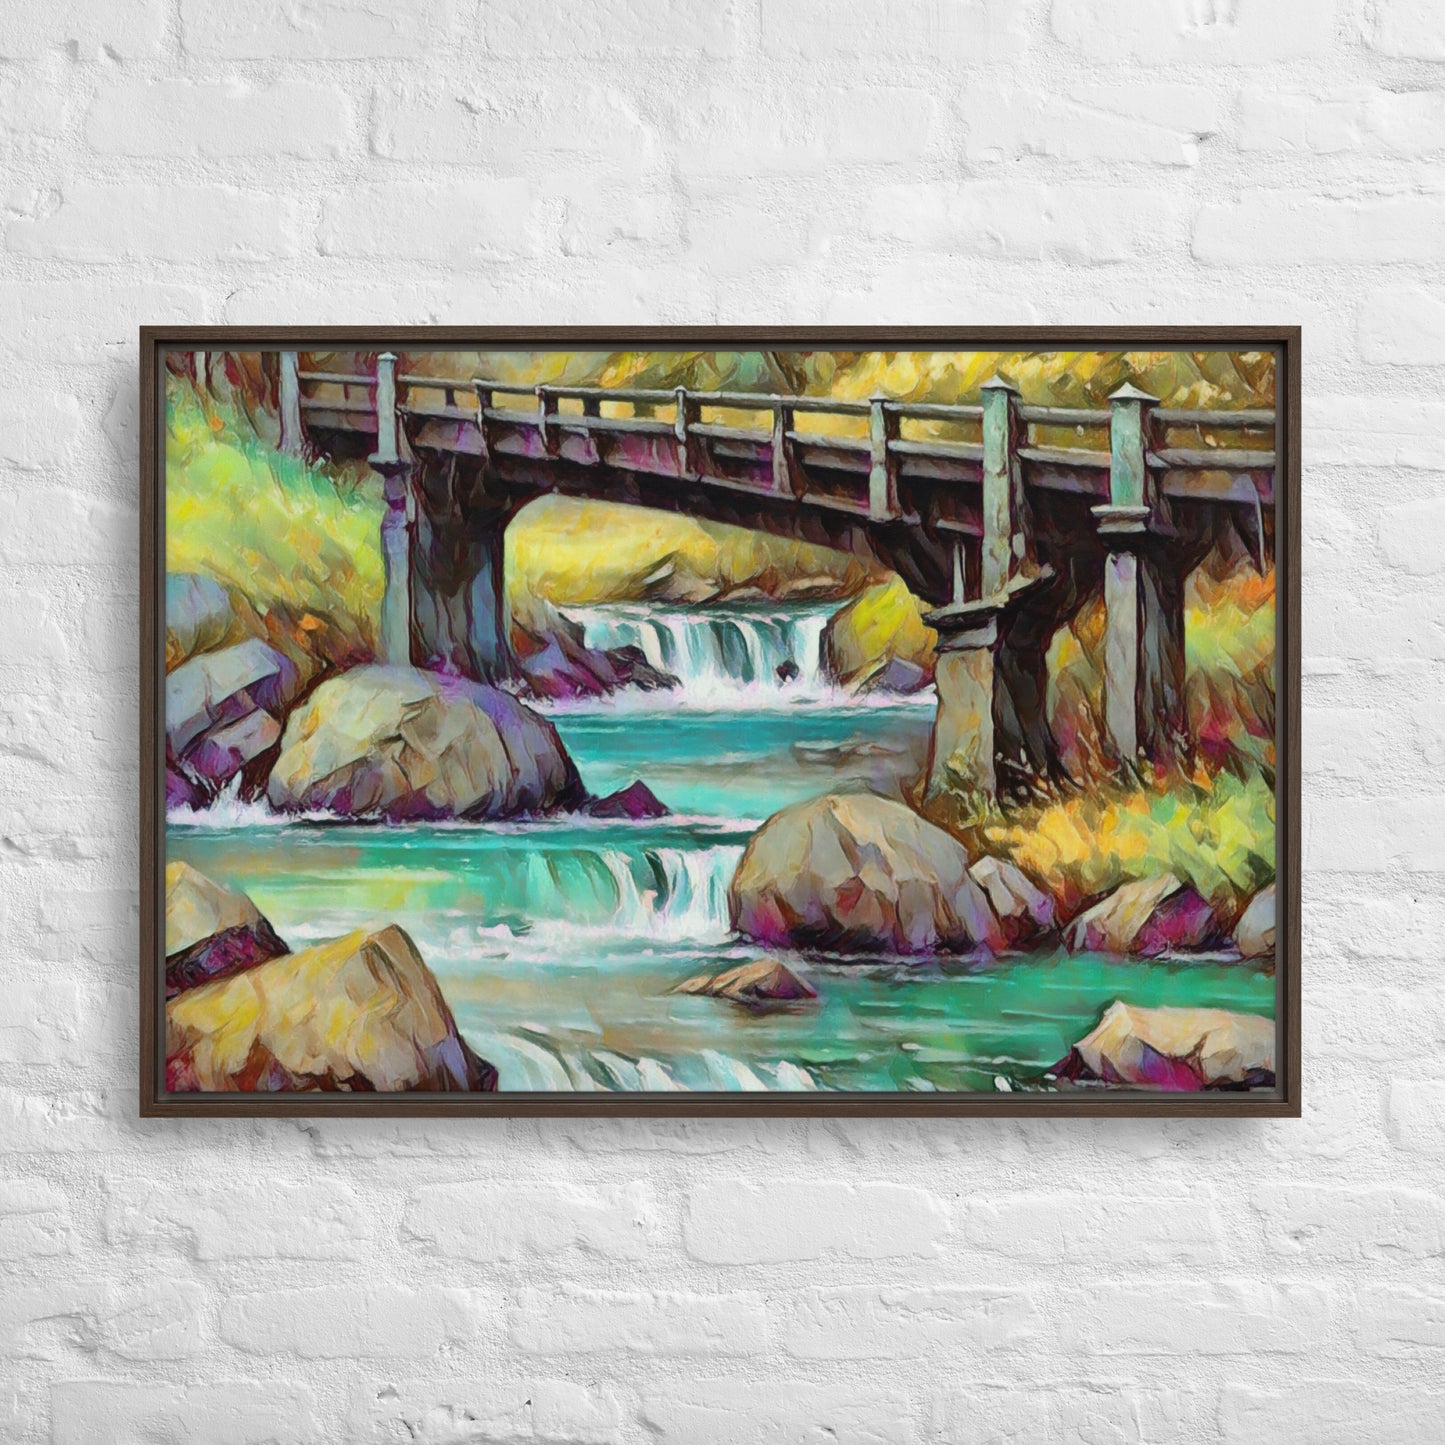 Oregon Bridge - Digital Art - Framed canvas - FREE SHIPPING